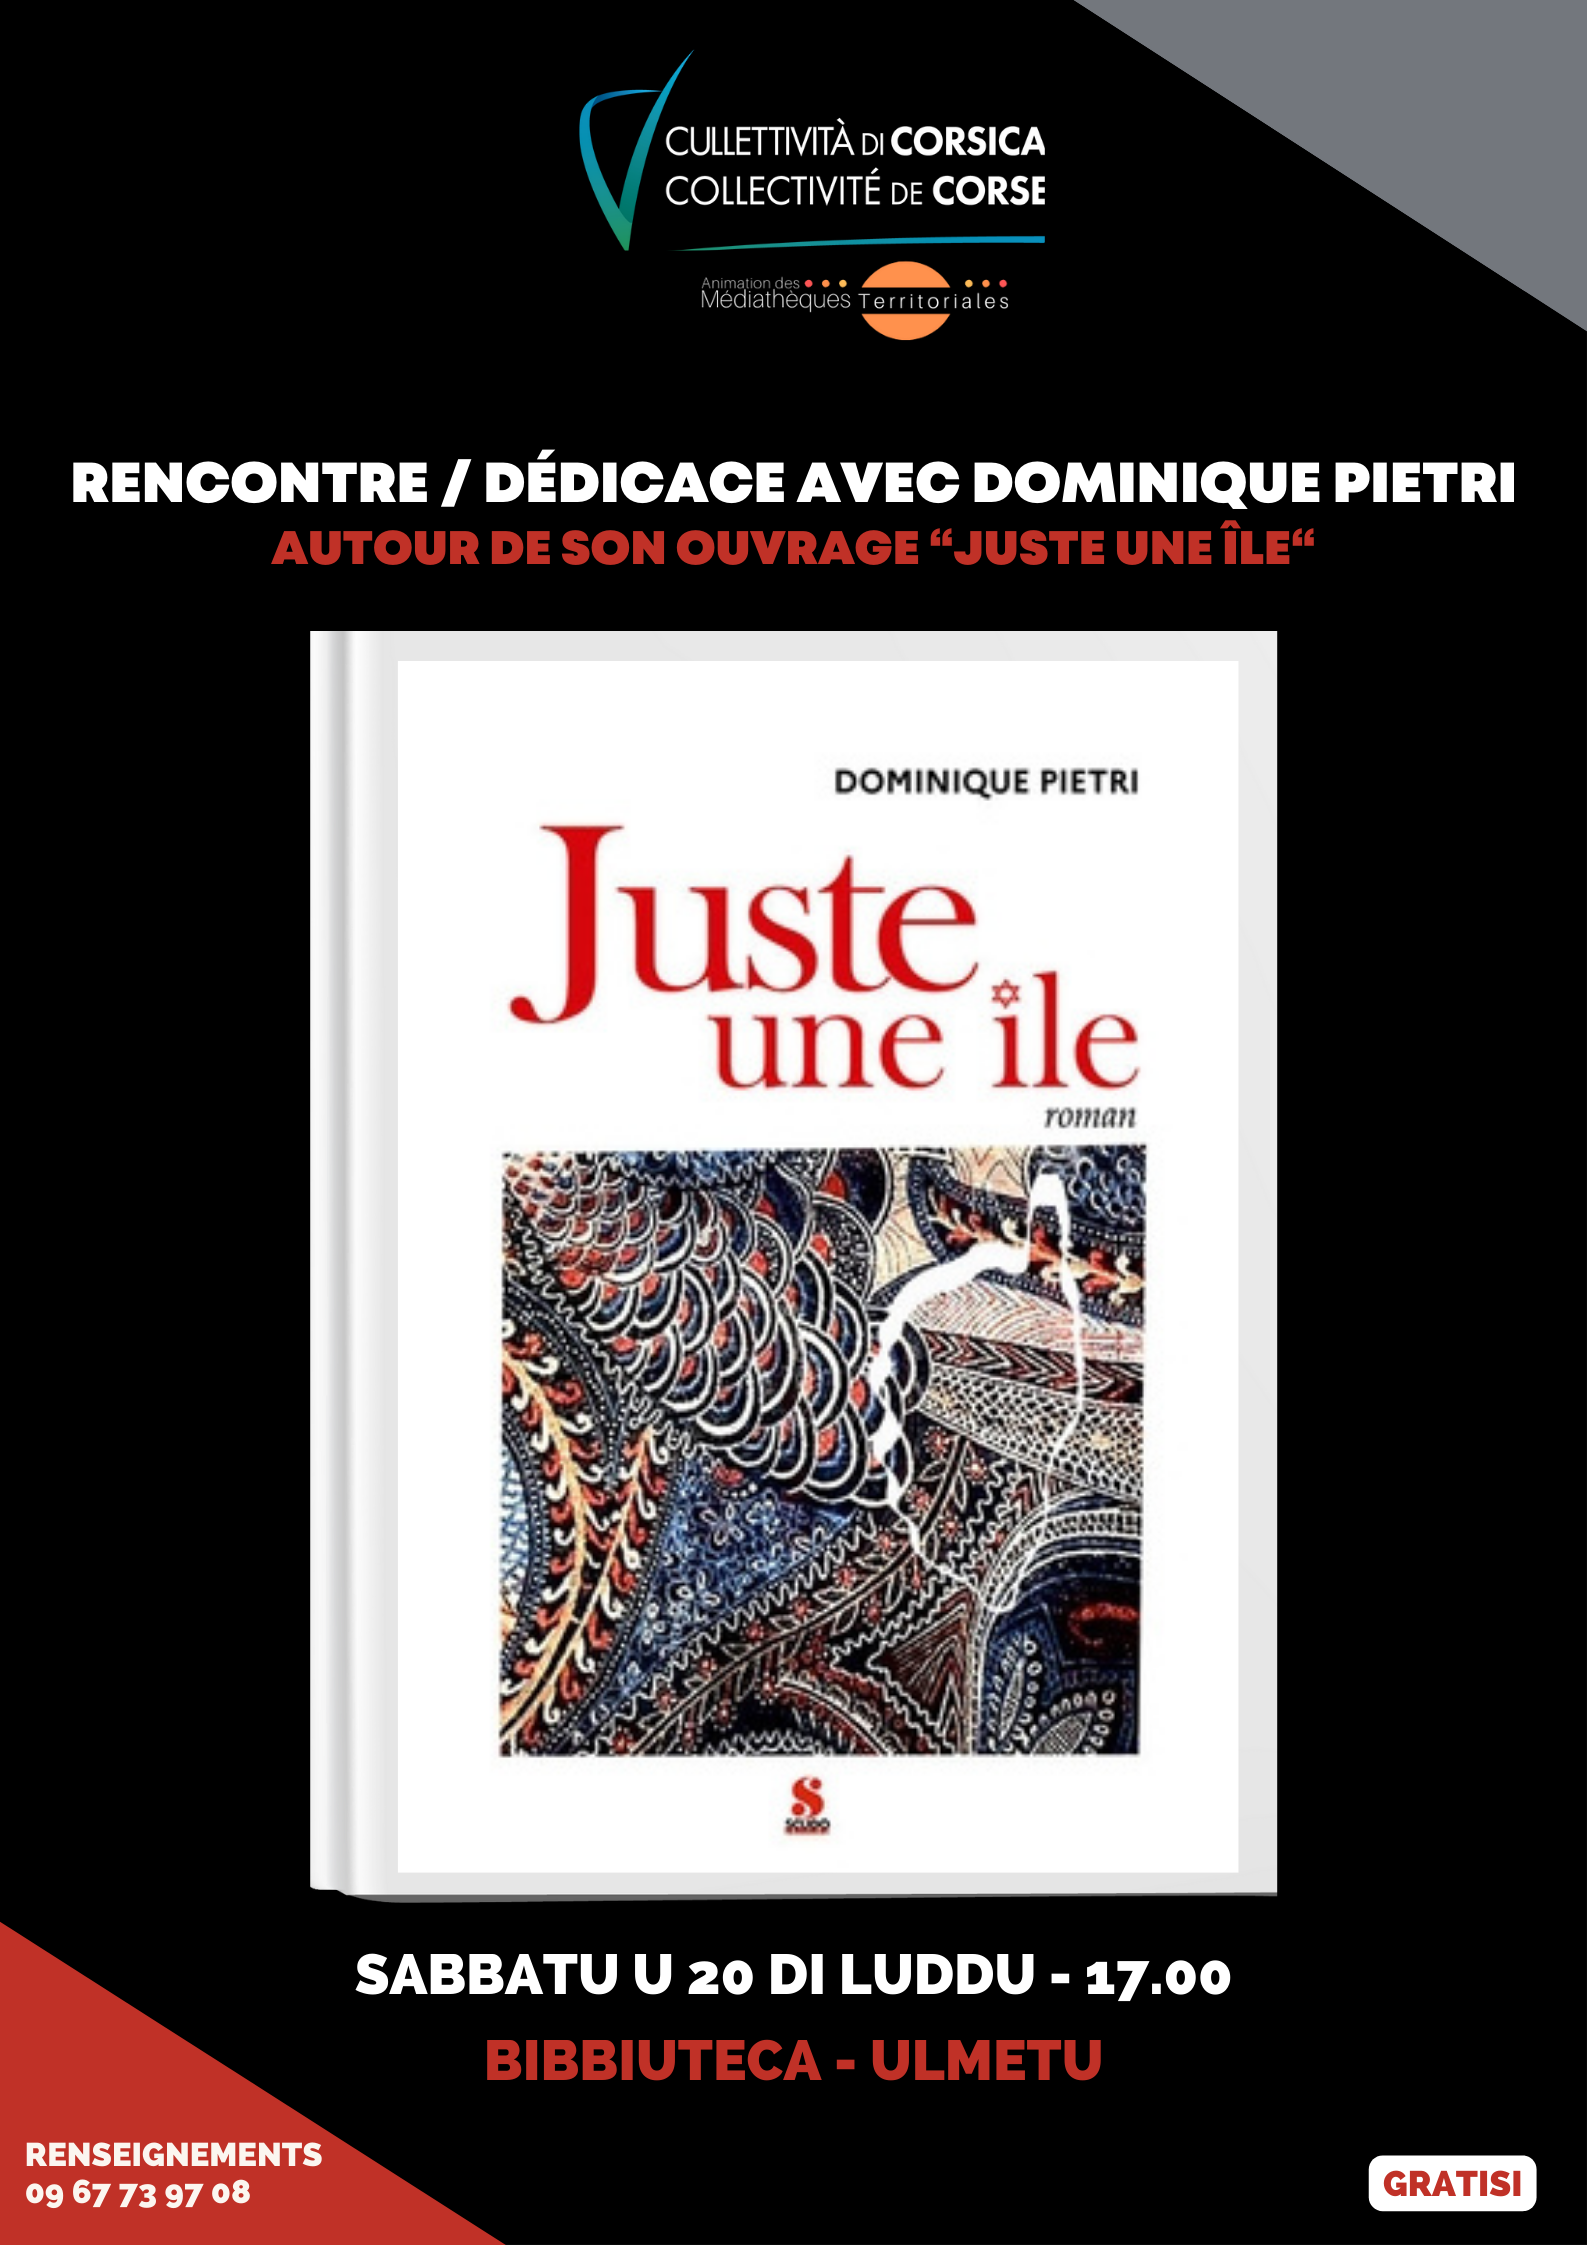 Rencontre / Dédicace avec Dominique Pietri autour de son ouvrage “Juste une île“ - Bibbiuteca - Ulmetu